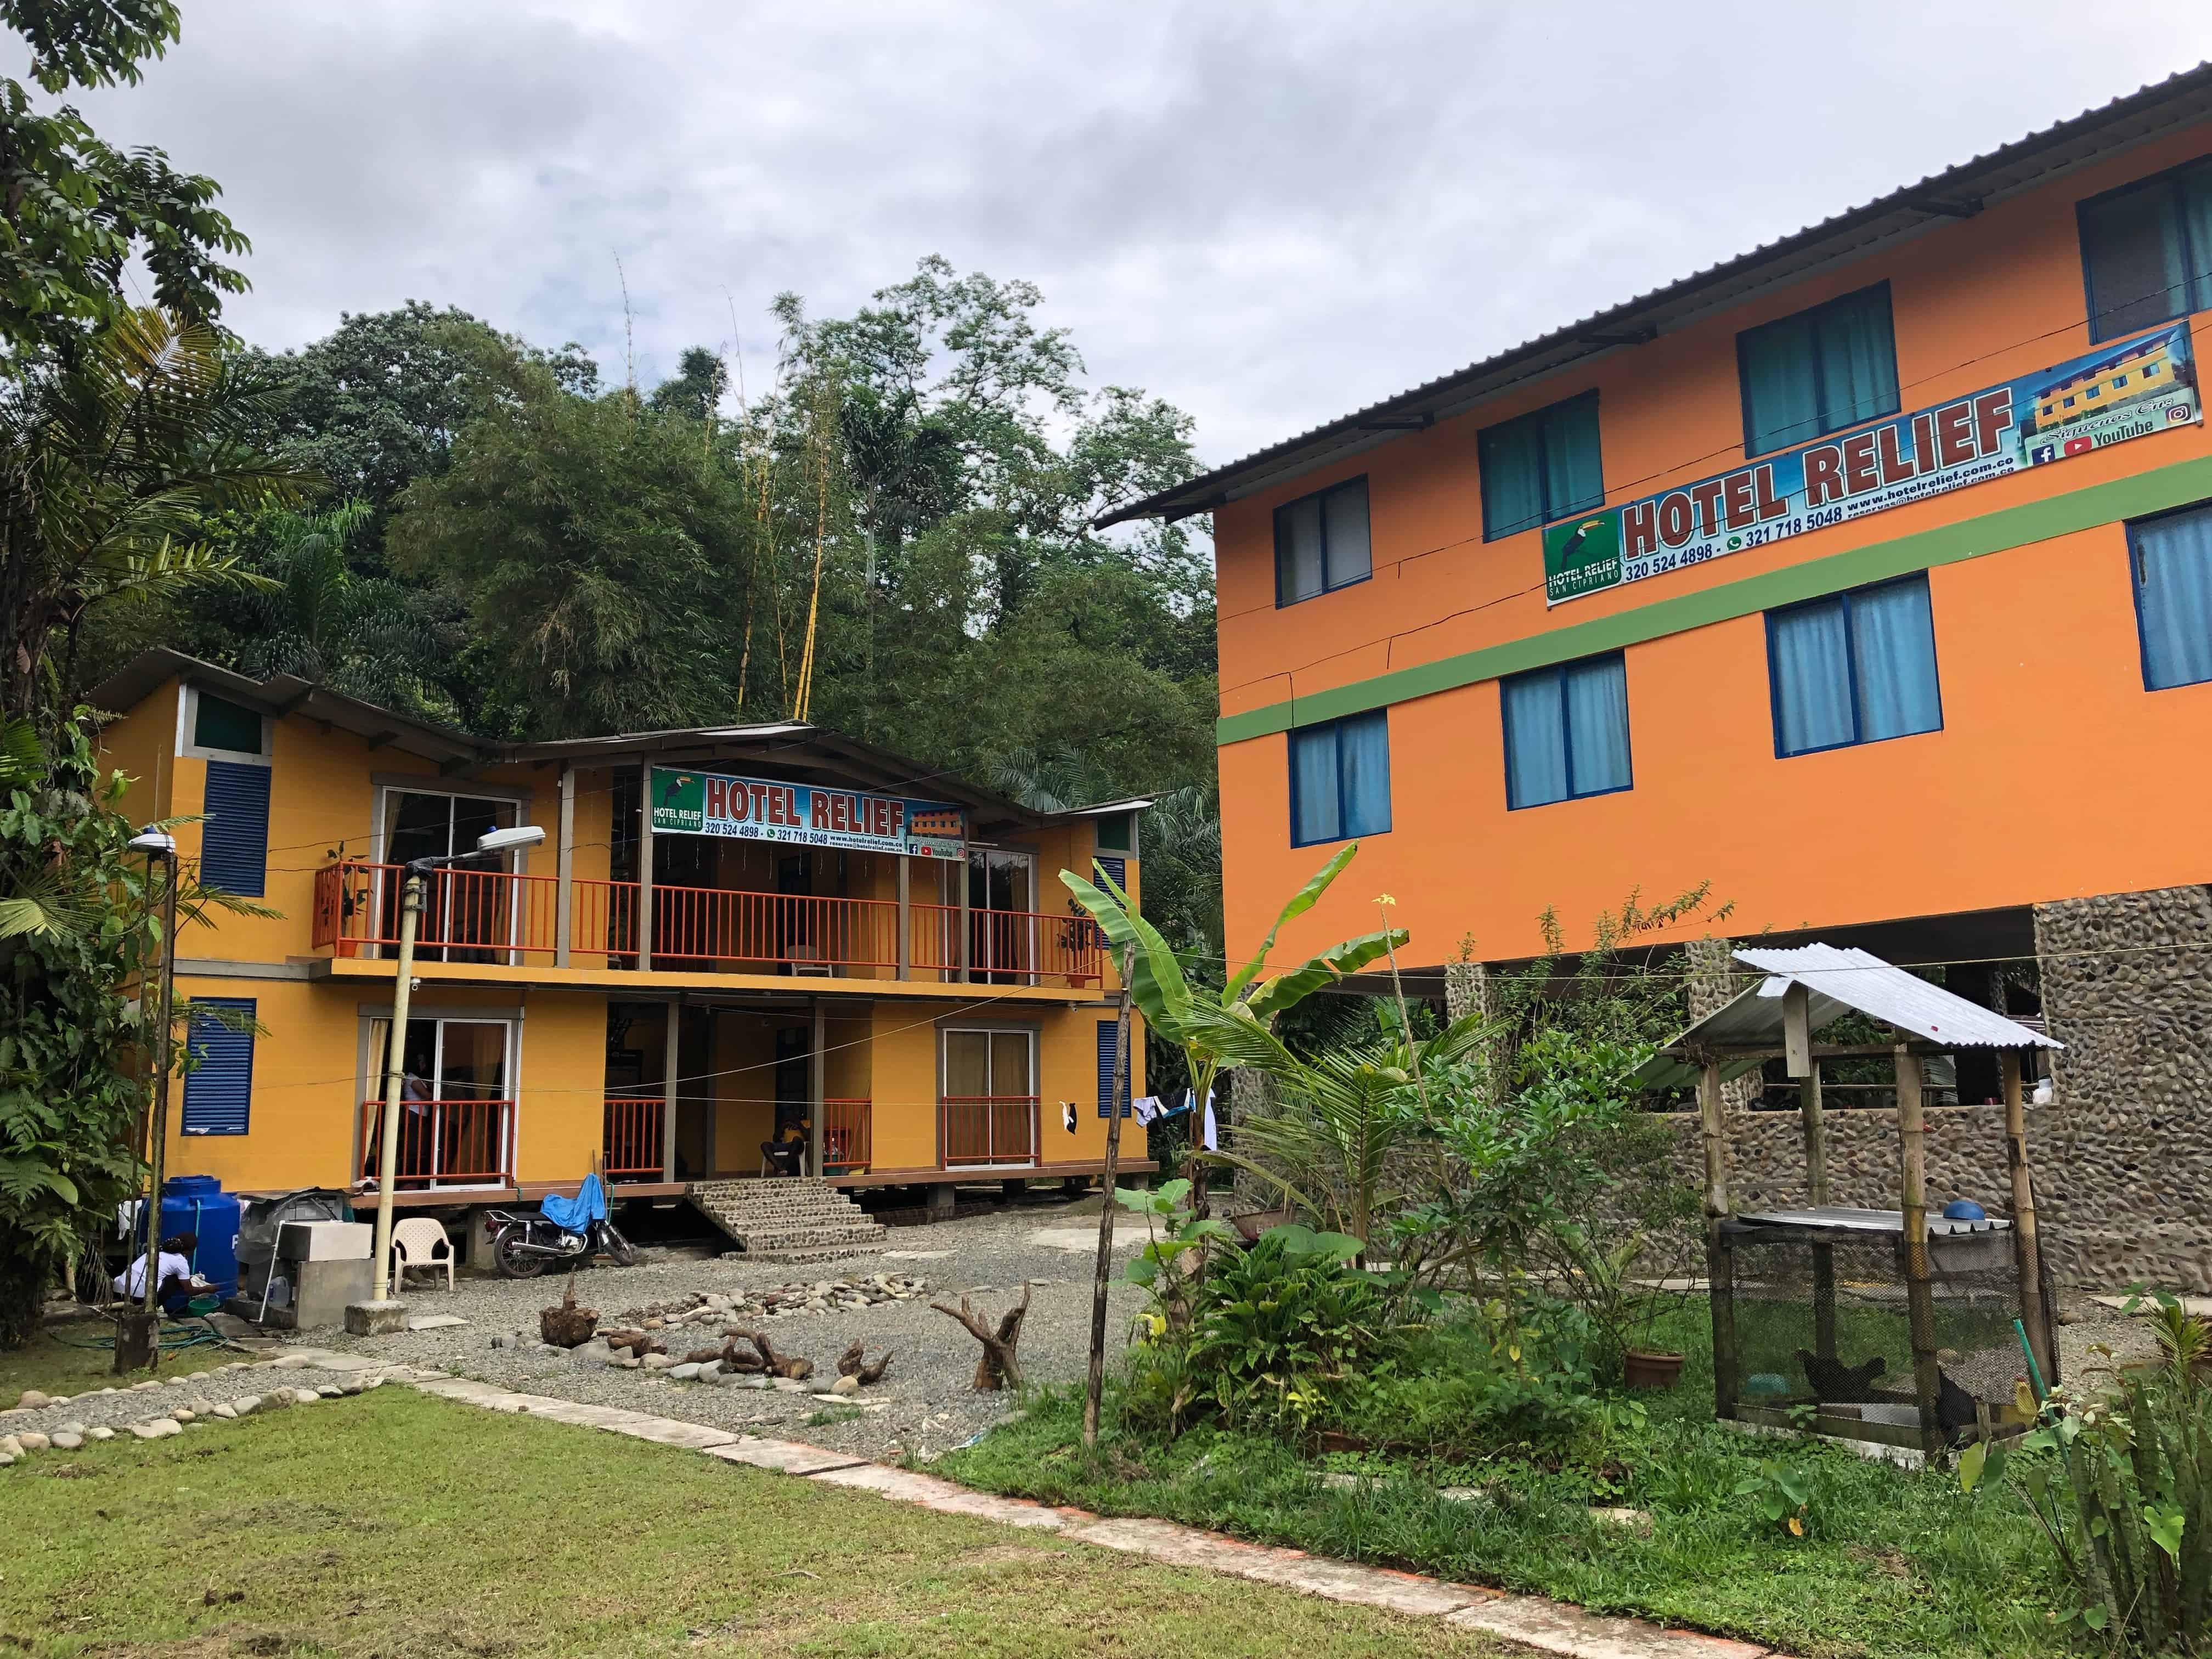 Hotel Relief in San Cipriano, Valle del Cauca, Colombia